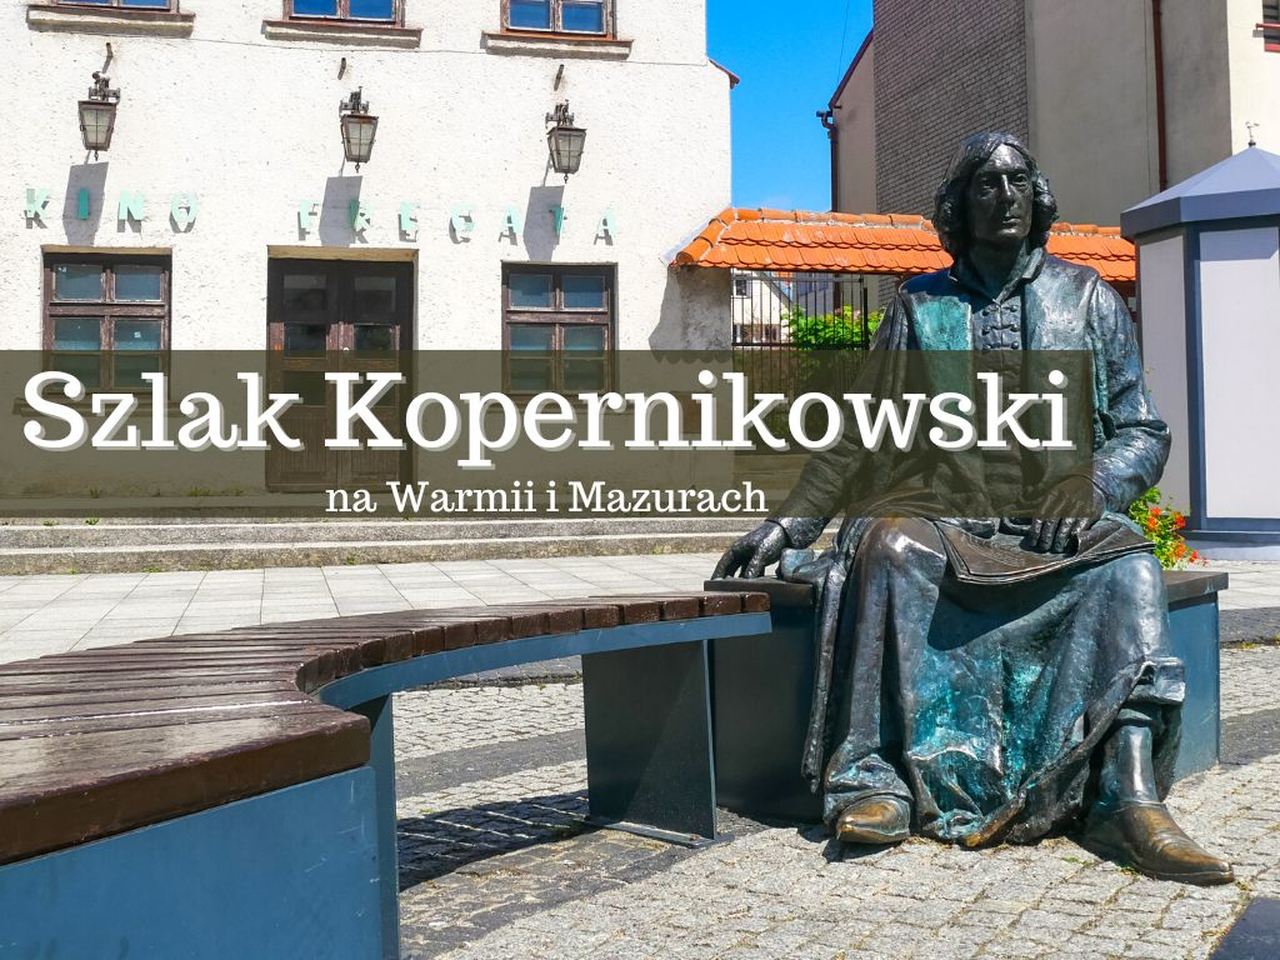 Szlak Kopernikowski na Warmii i Mazurach to turystyczny szlak drogowy o długości blisko 300 km. Upamiętnia Mikołaja Kopernika i jego związki z Warmią